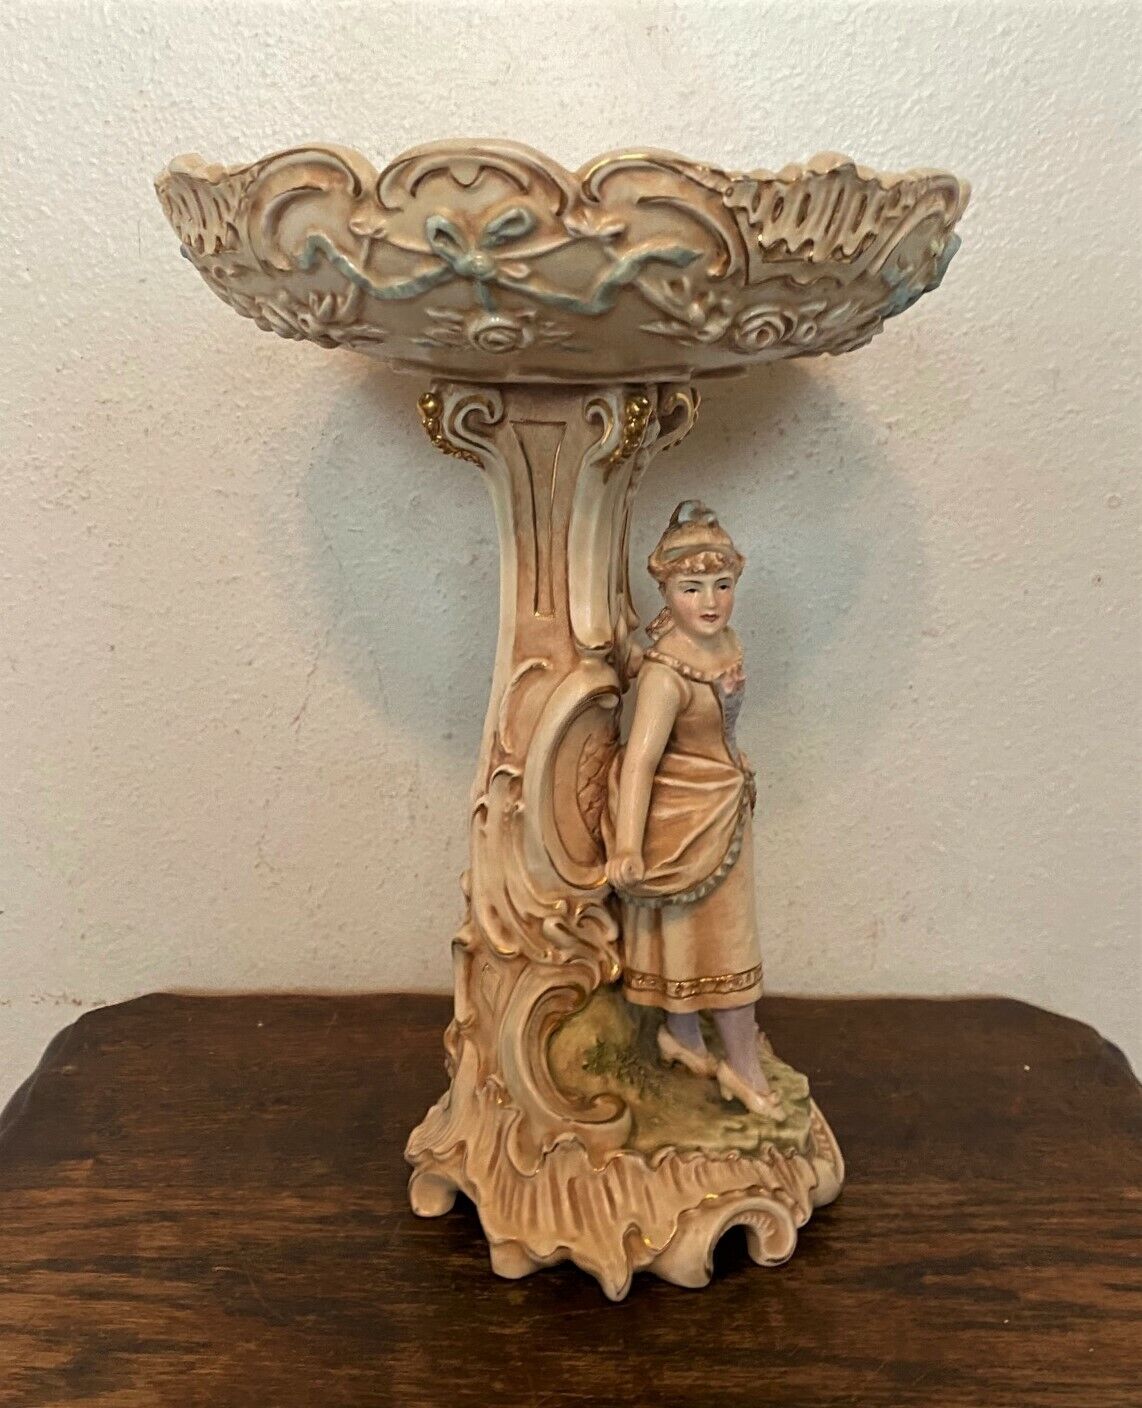 Antique German Porcelain Figural Compote Pedestal Centerpiece Bowl - 12.5\